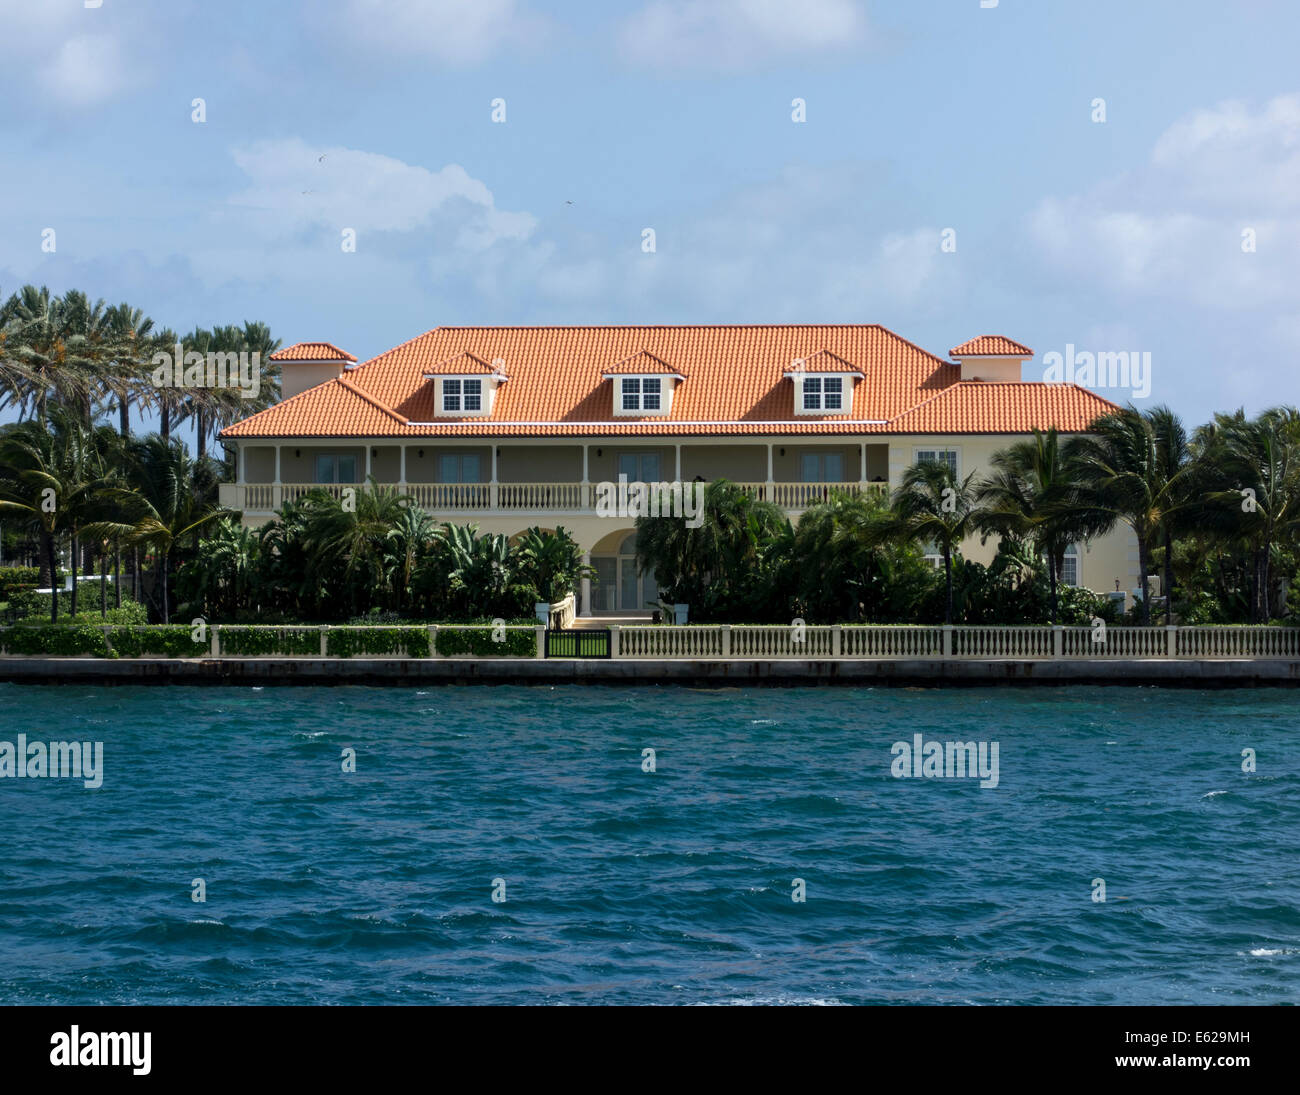 house of Tiger Woods, Paradise Island, the Bahamas Stock Photo